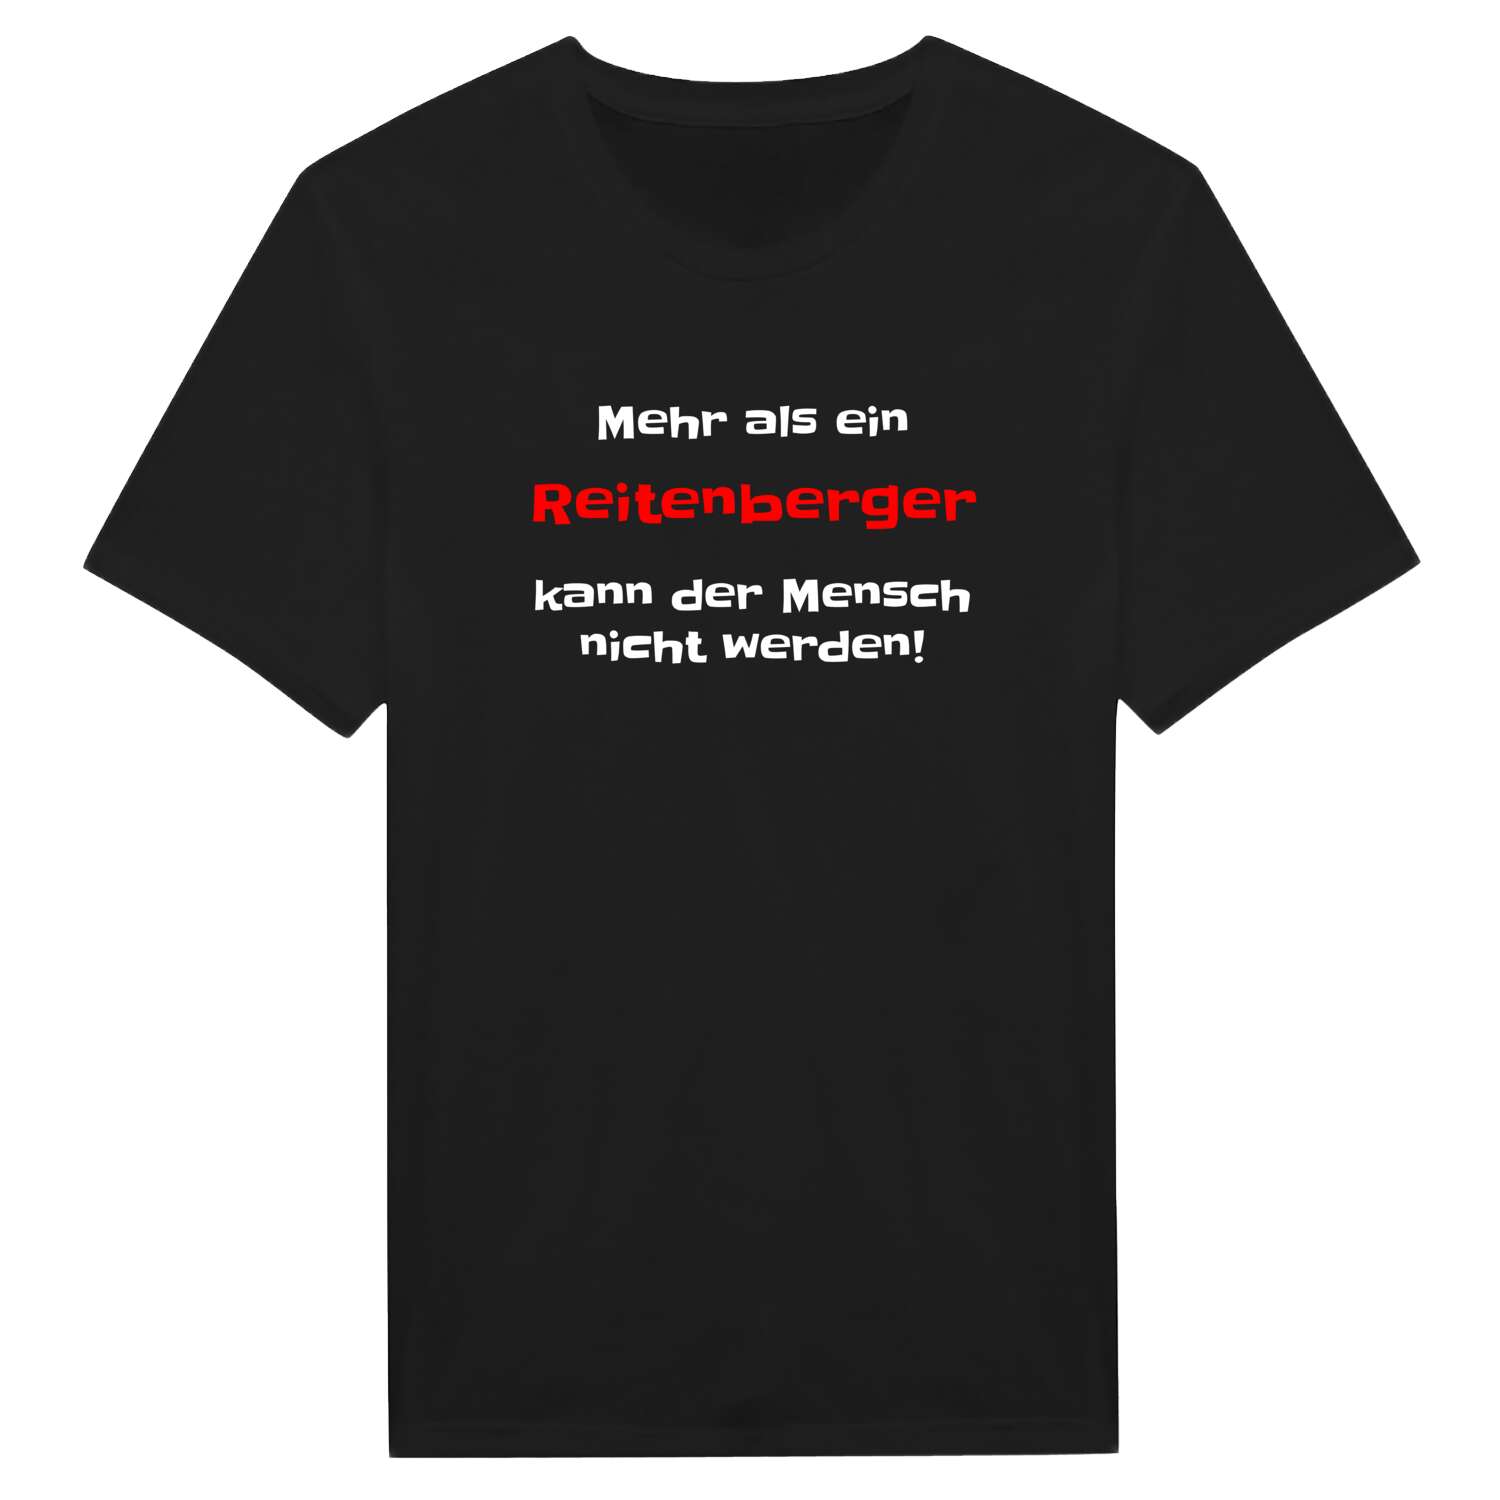 Reitenberg T-Shirt »Mehr als ein«